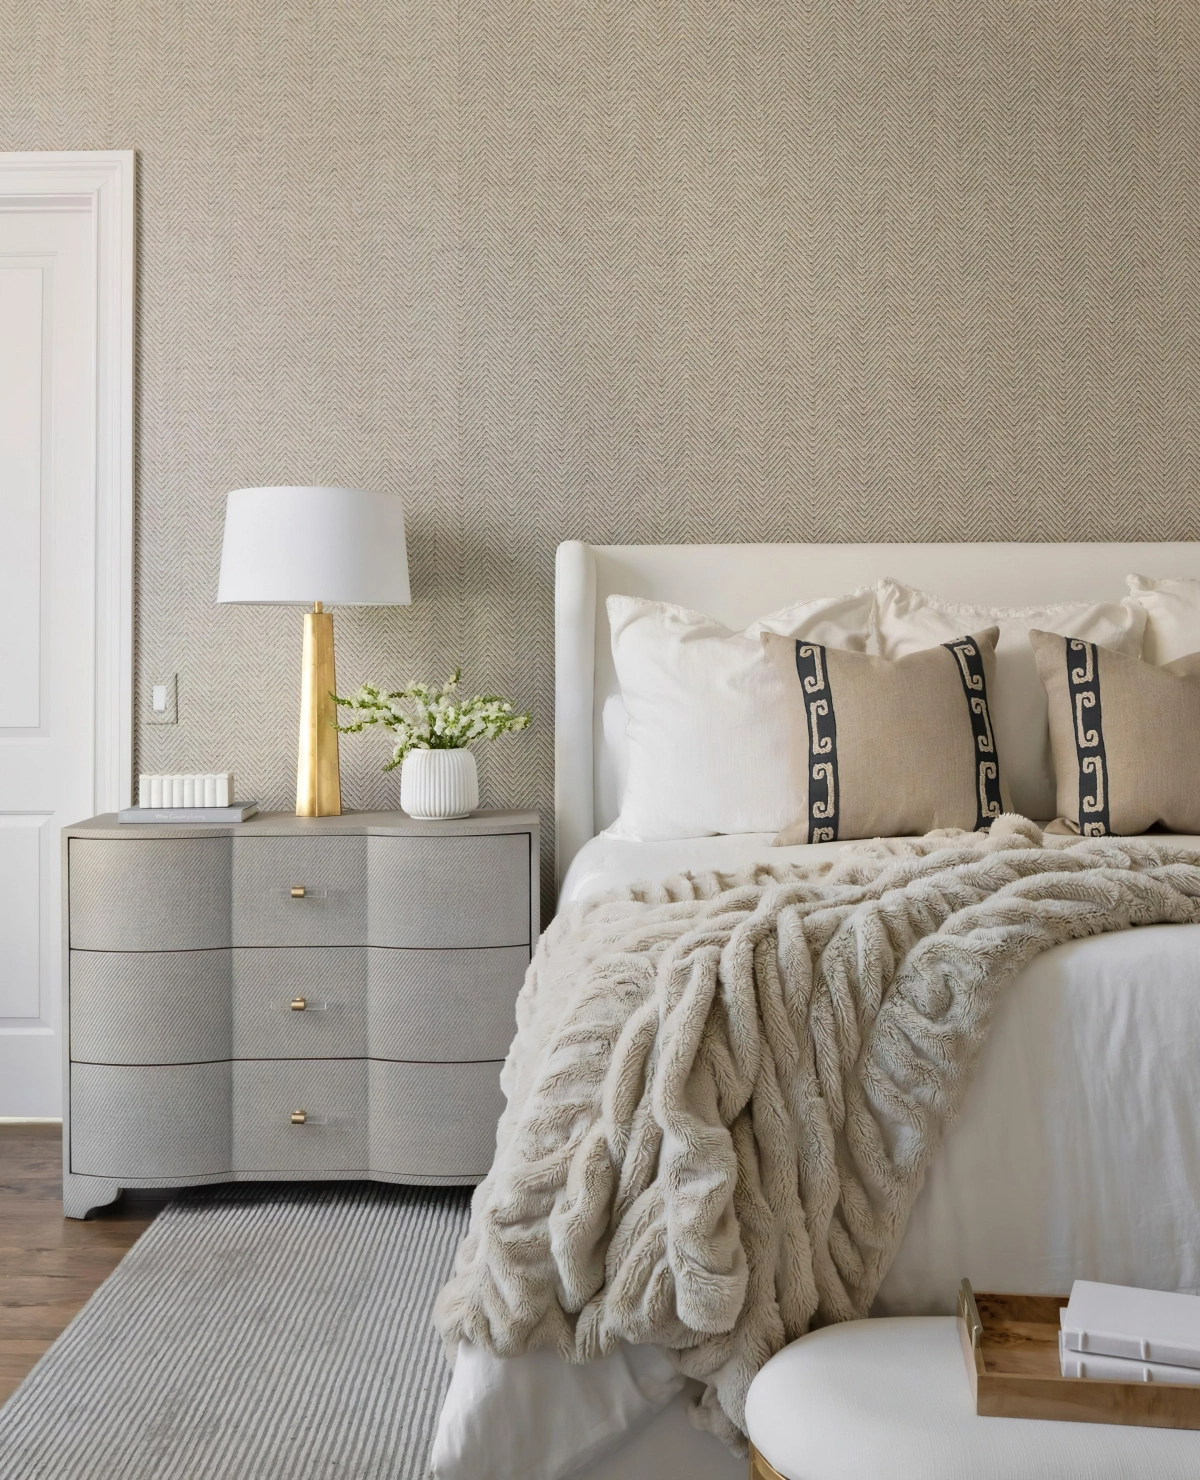 couleur mur taupe tete de lit beige plaid table chev et gris lampe or et blanc